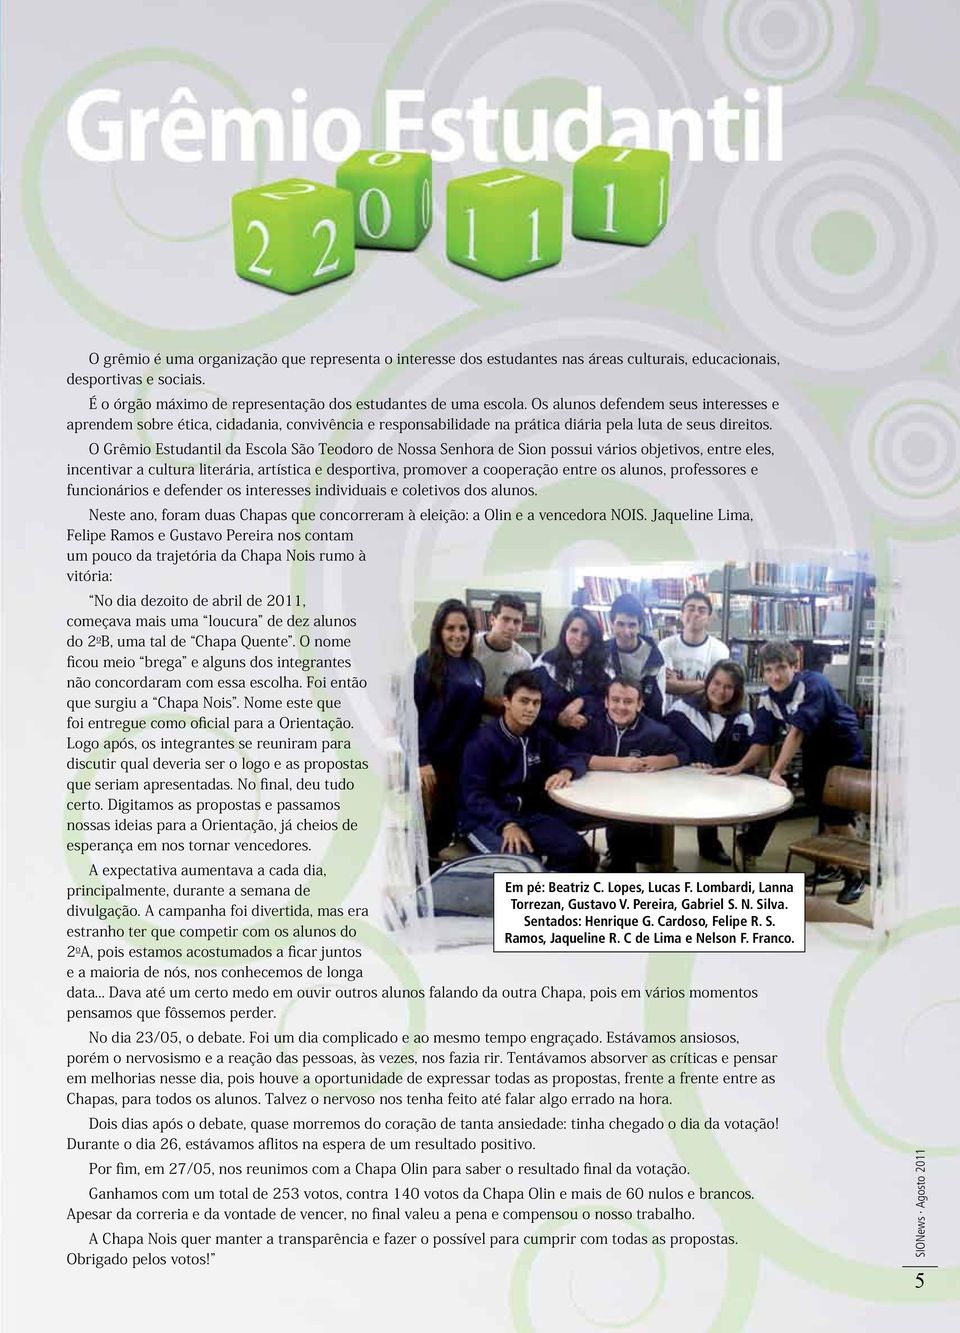 O Grêmio Estudantil da Escola São Teodoro de Nossa Senhora de Sion possui vários objetivos, entre eles, incentivar a cultura literária, artística e desportiva, promover a cooperação entre os alunos,